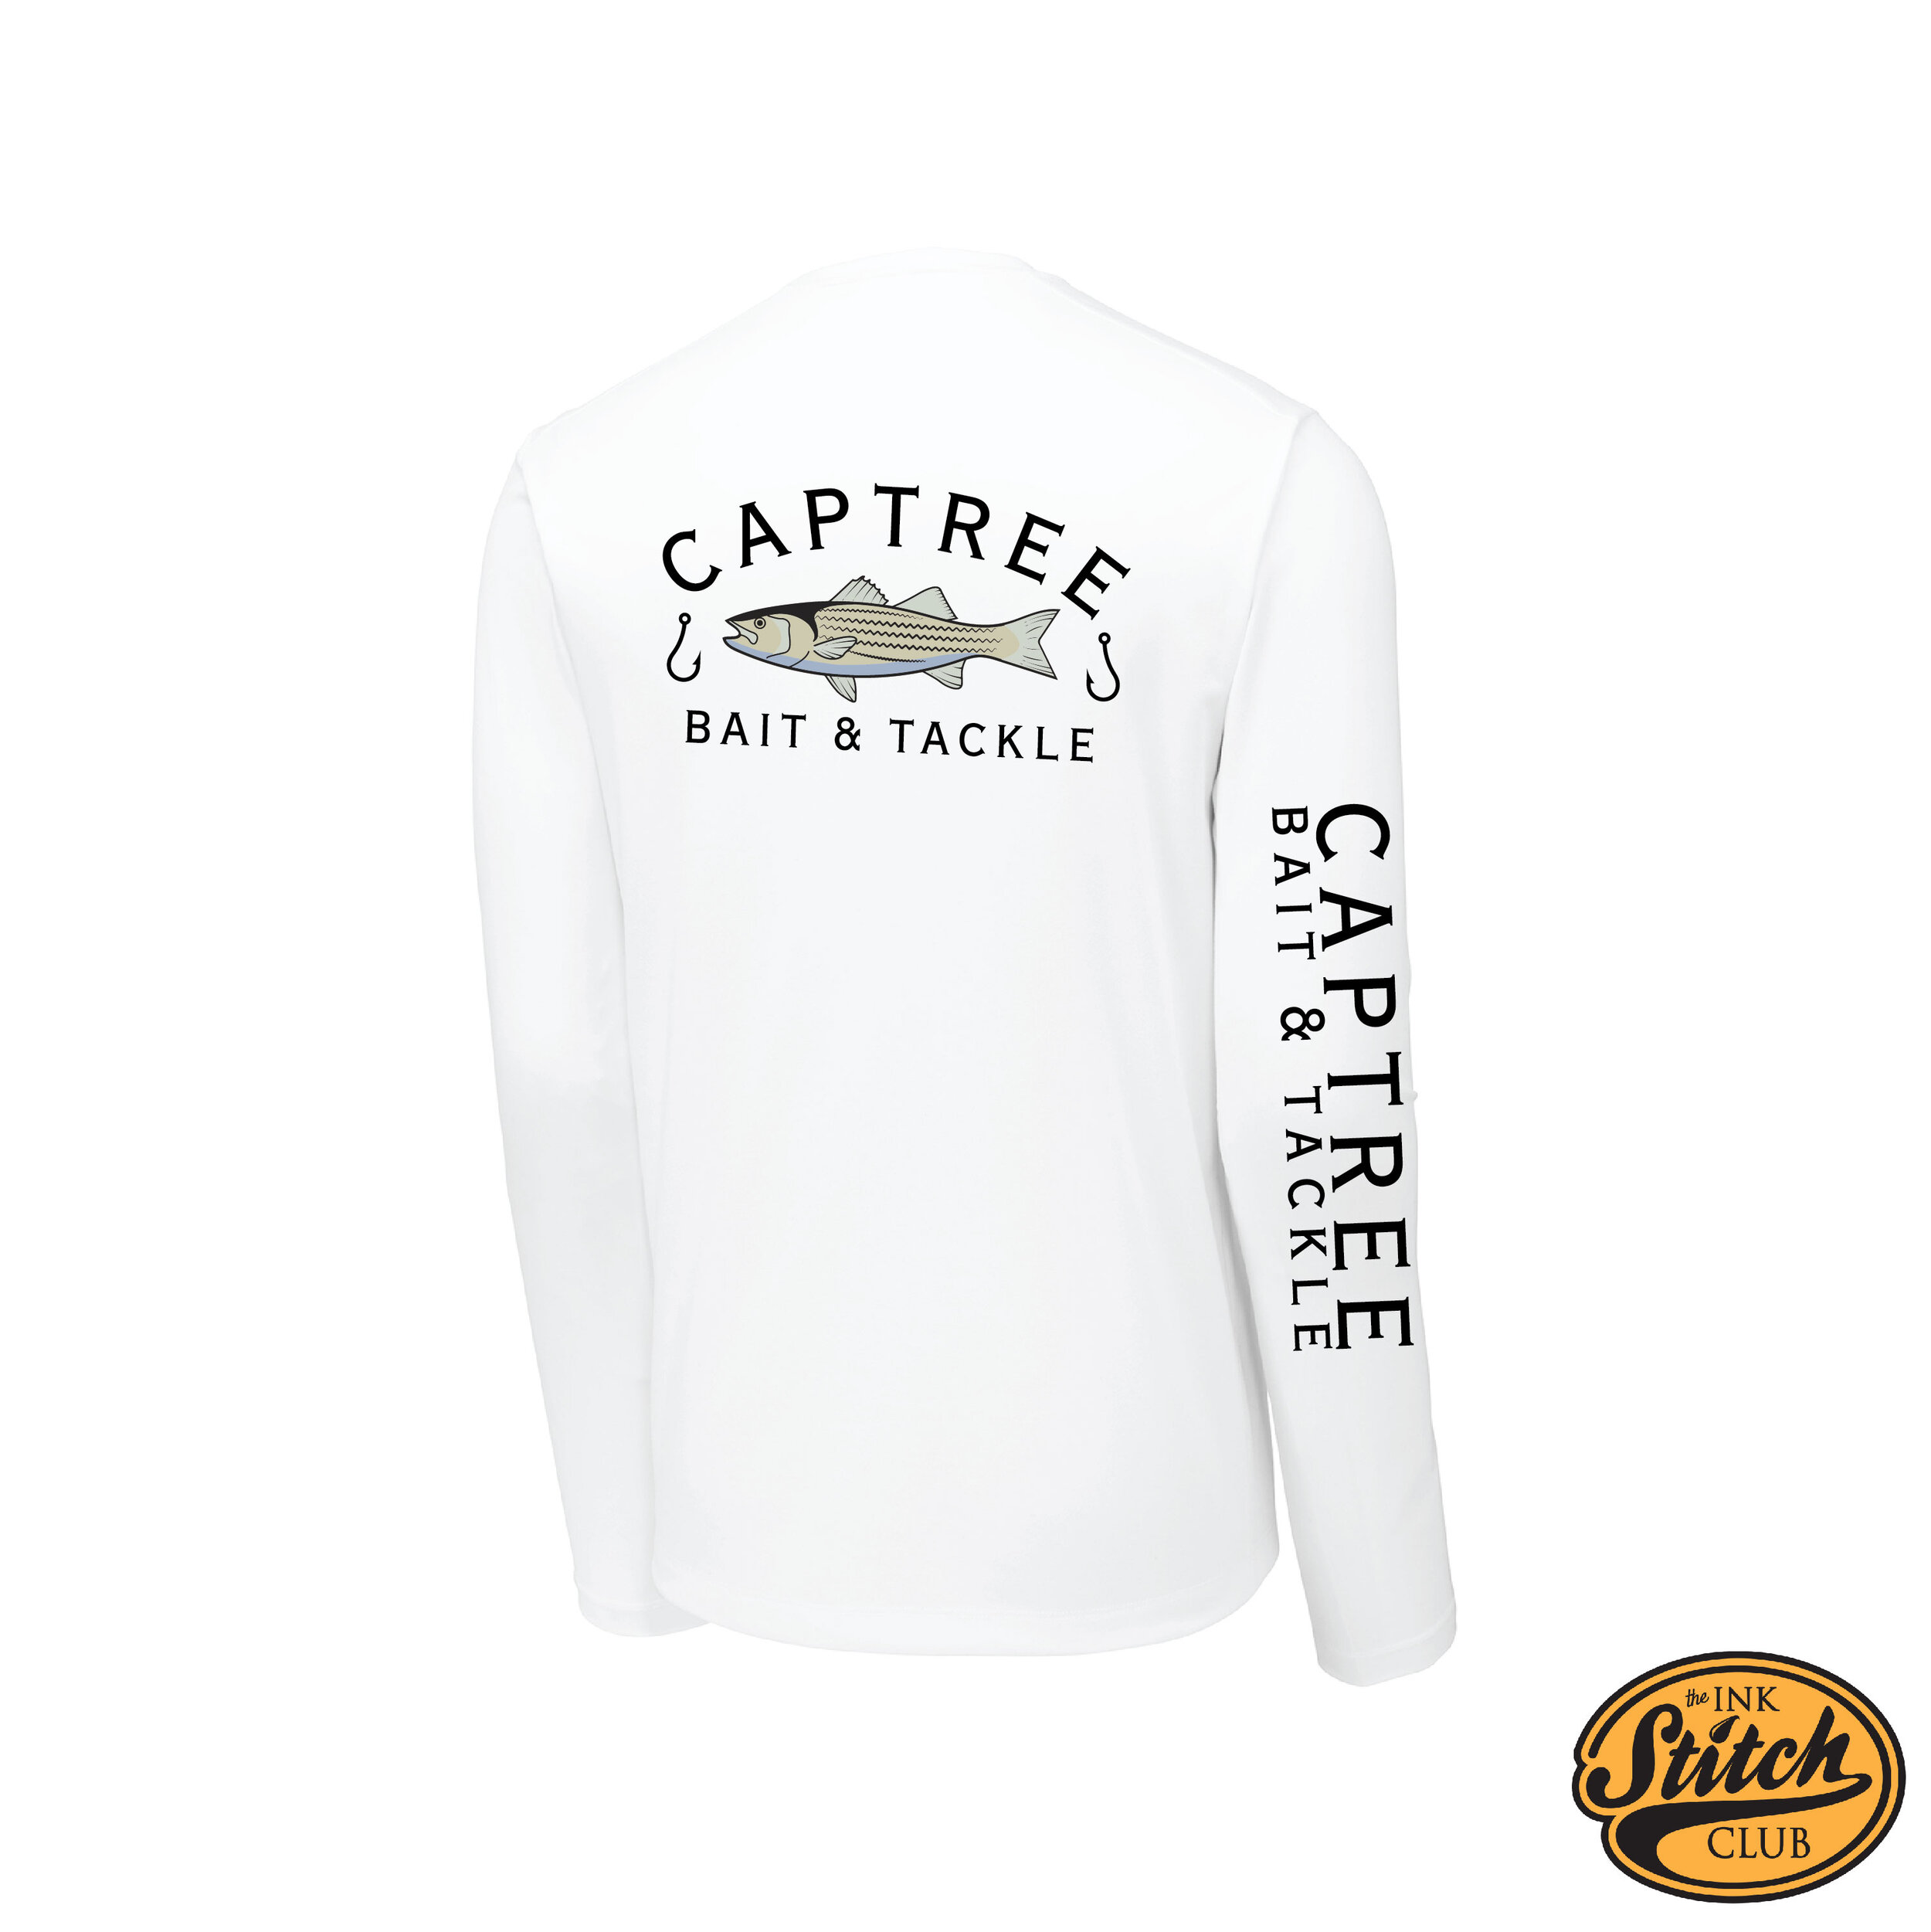 Captree Bass Shirt Mocks-03.jpg